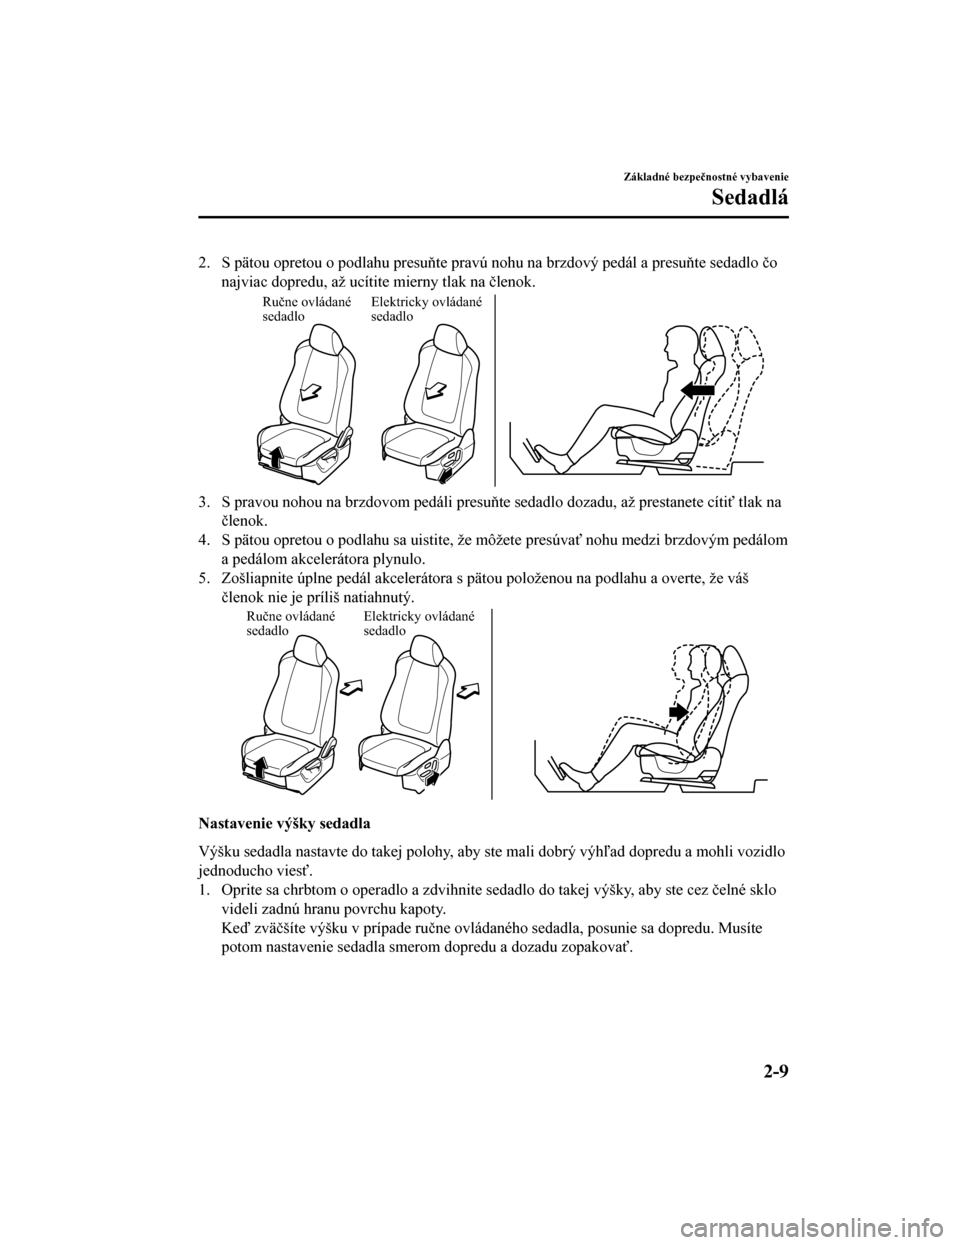 MAZDA MODEL CX-5 2019  Užívateľská príručka (in Slovak) 2. S pätou opretou o podlahu presuňte pravú nohu na brzdový pedál a presuňte sedadlo čo
najviac dopredu, až ucítite mierny tlak na členok.
Ručne ovládané 
sedadlo Elektricky ovládané 
s